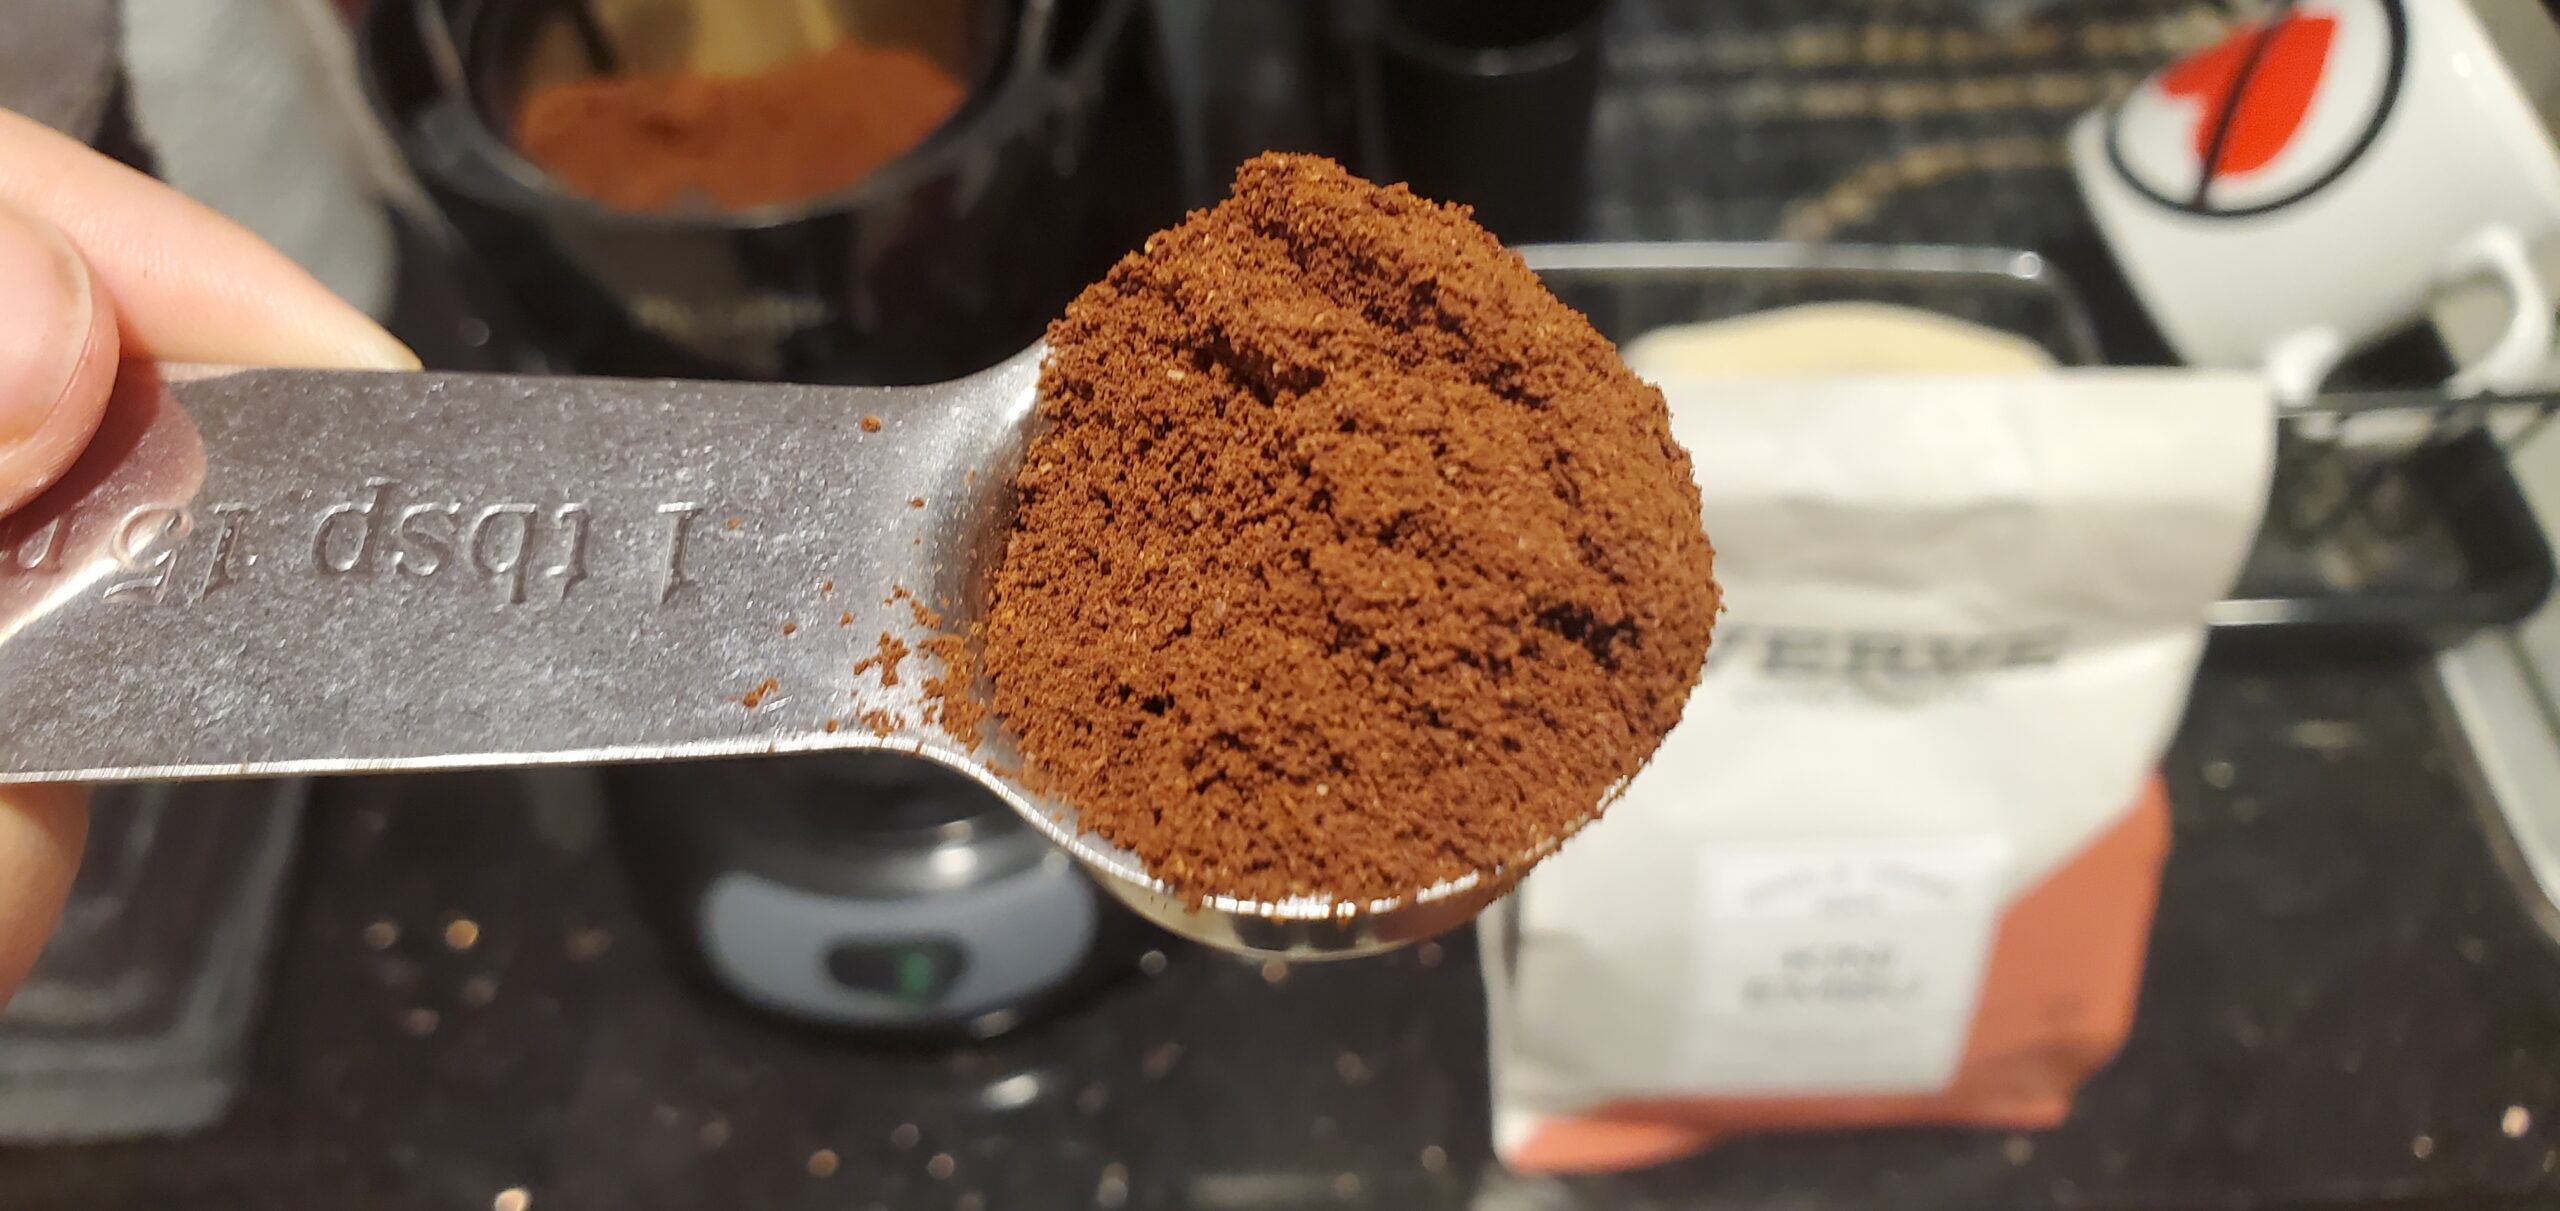 Kini Embu coffee grounds in a tablespoon